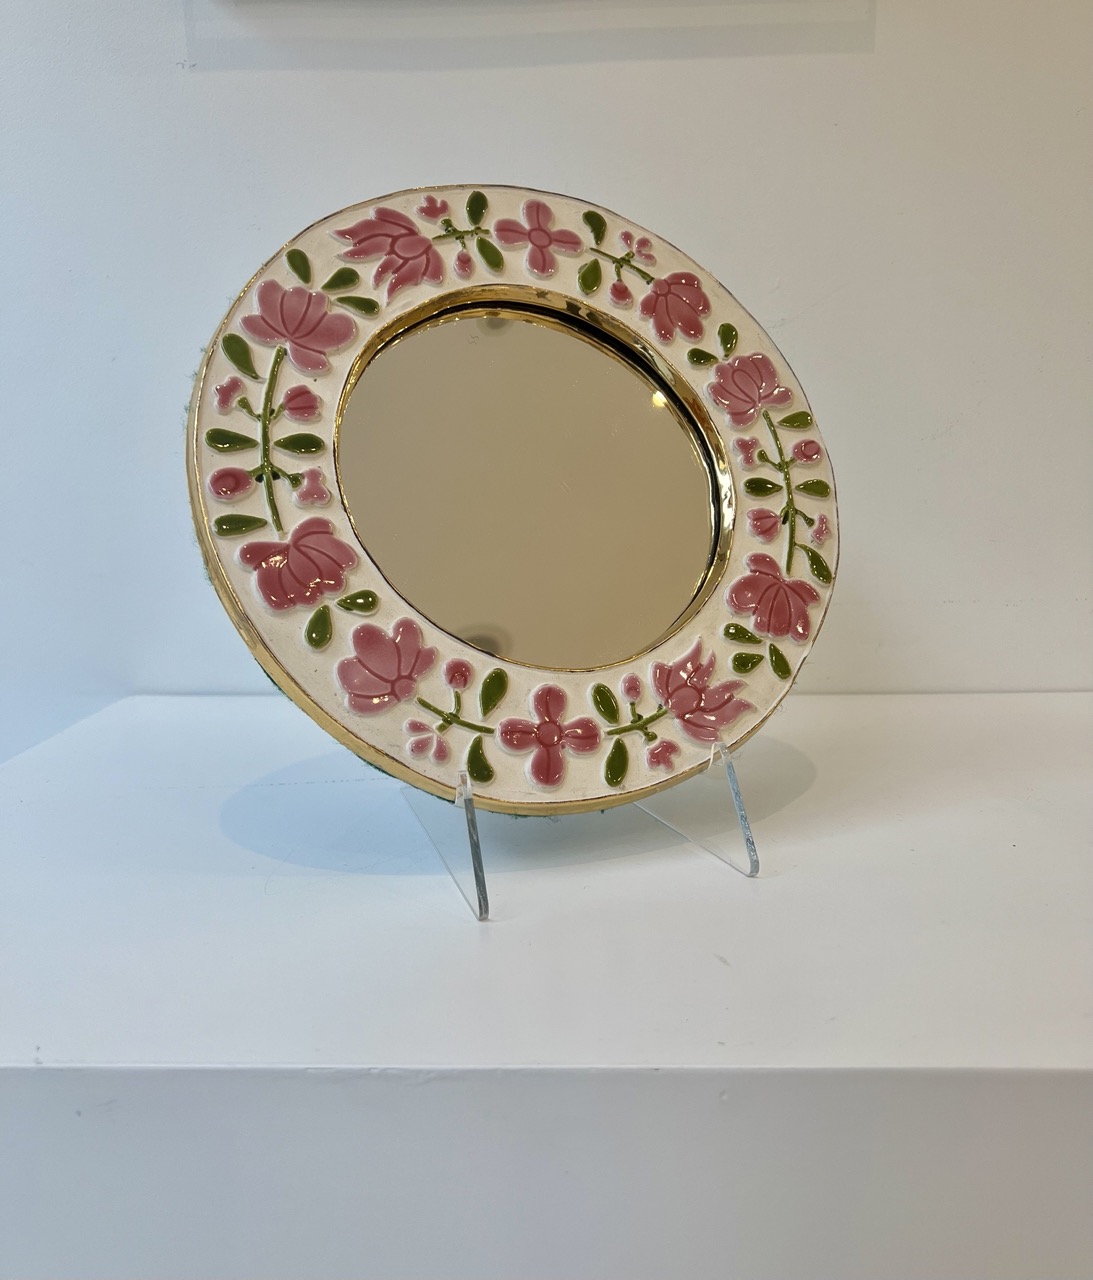 Un gracioso espejo floral de Mithé Espelt, titulado Romántico. Se observan los finos esmaltes de Mithé Espelt y la huella de su mano en el borde dorado.